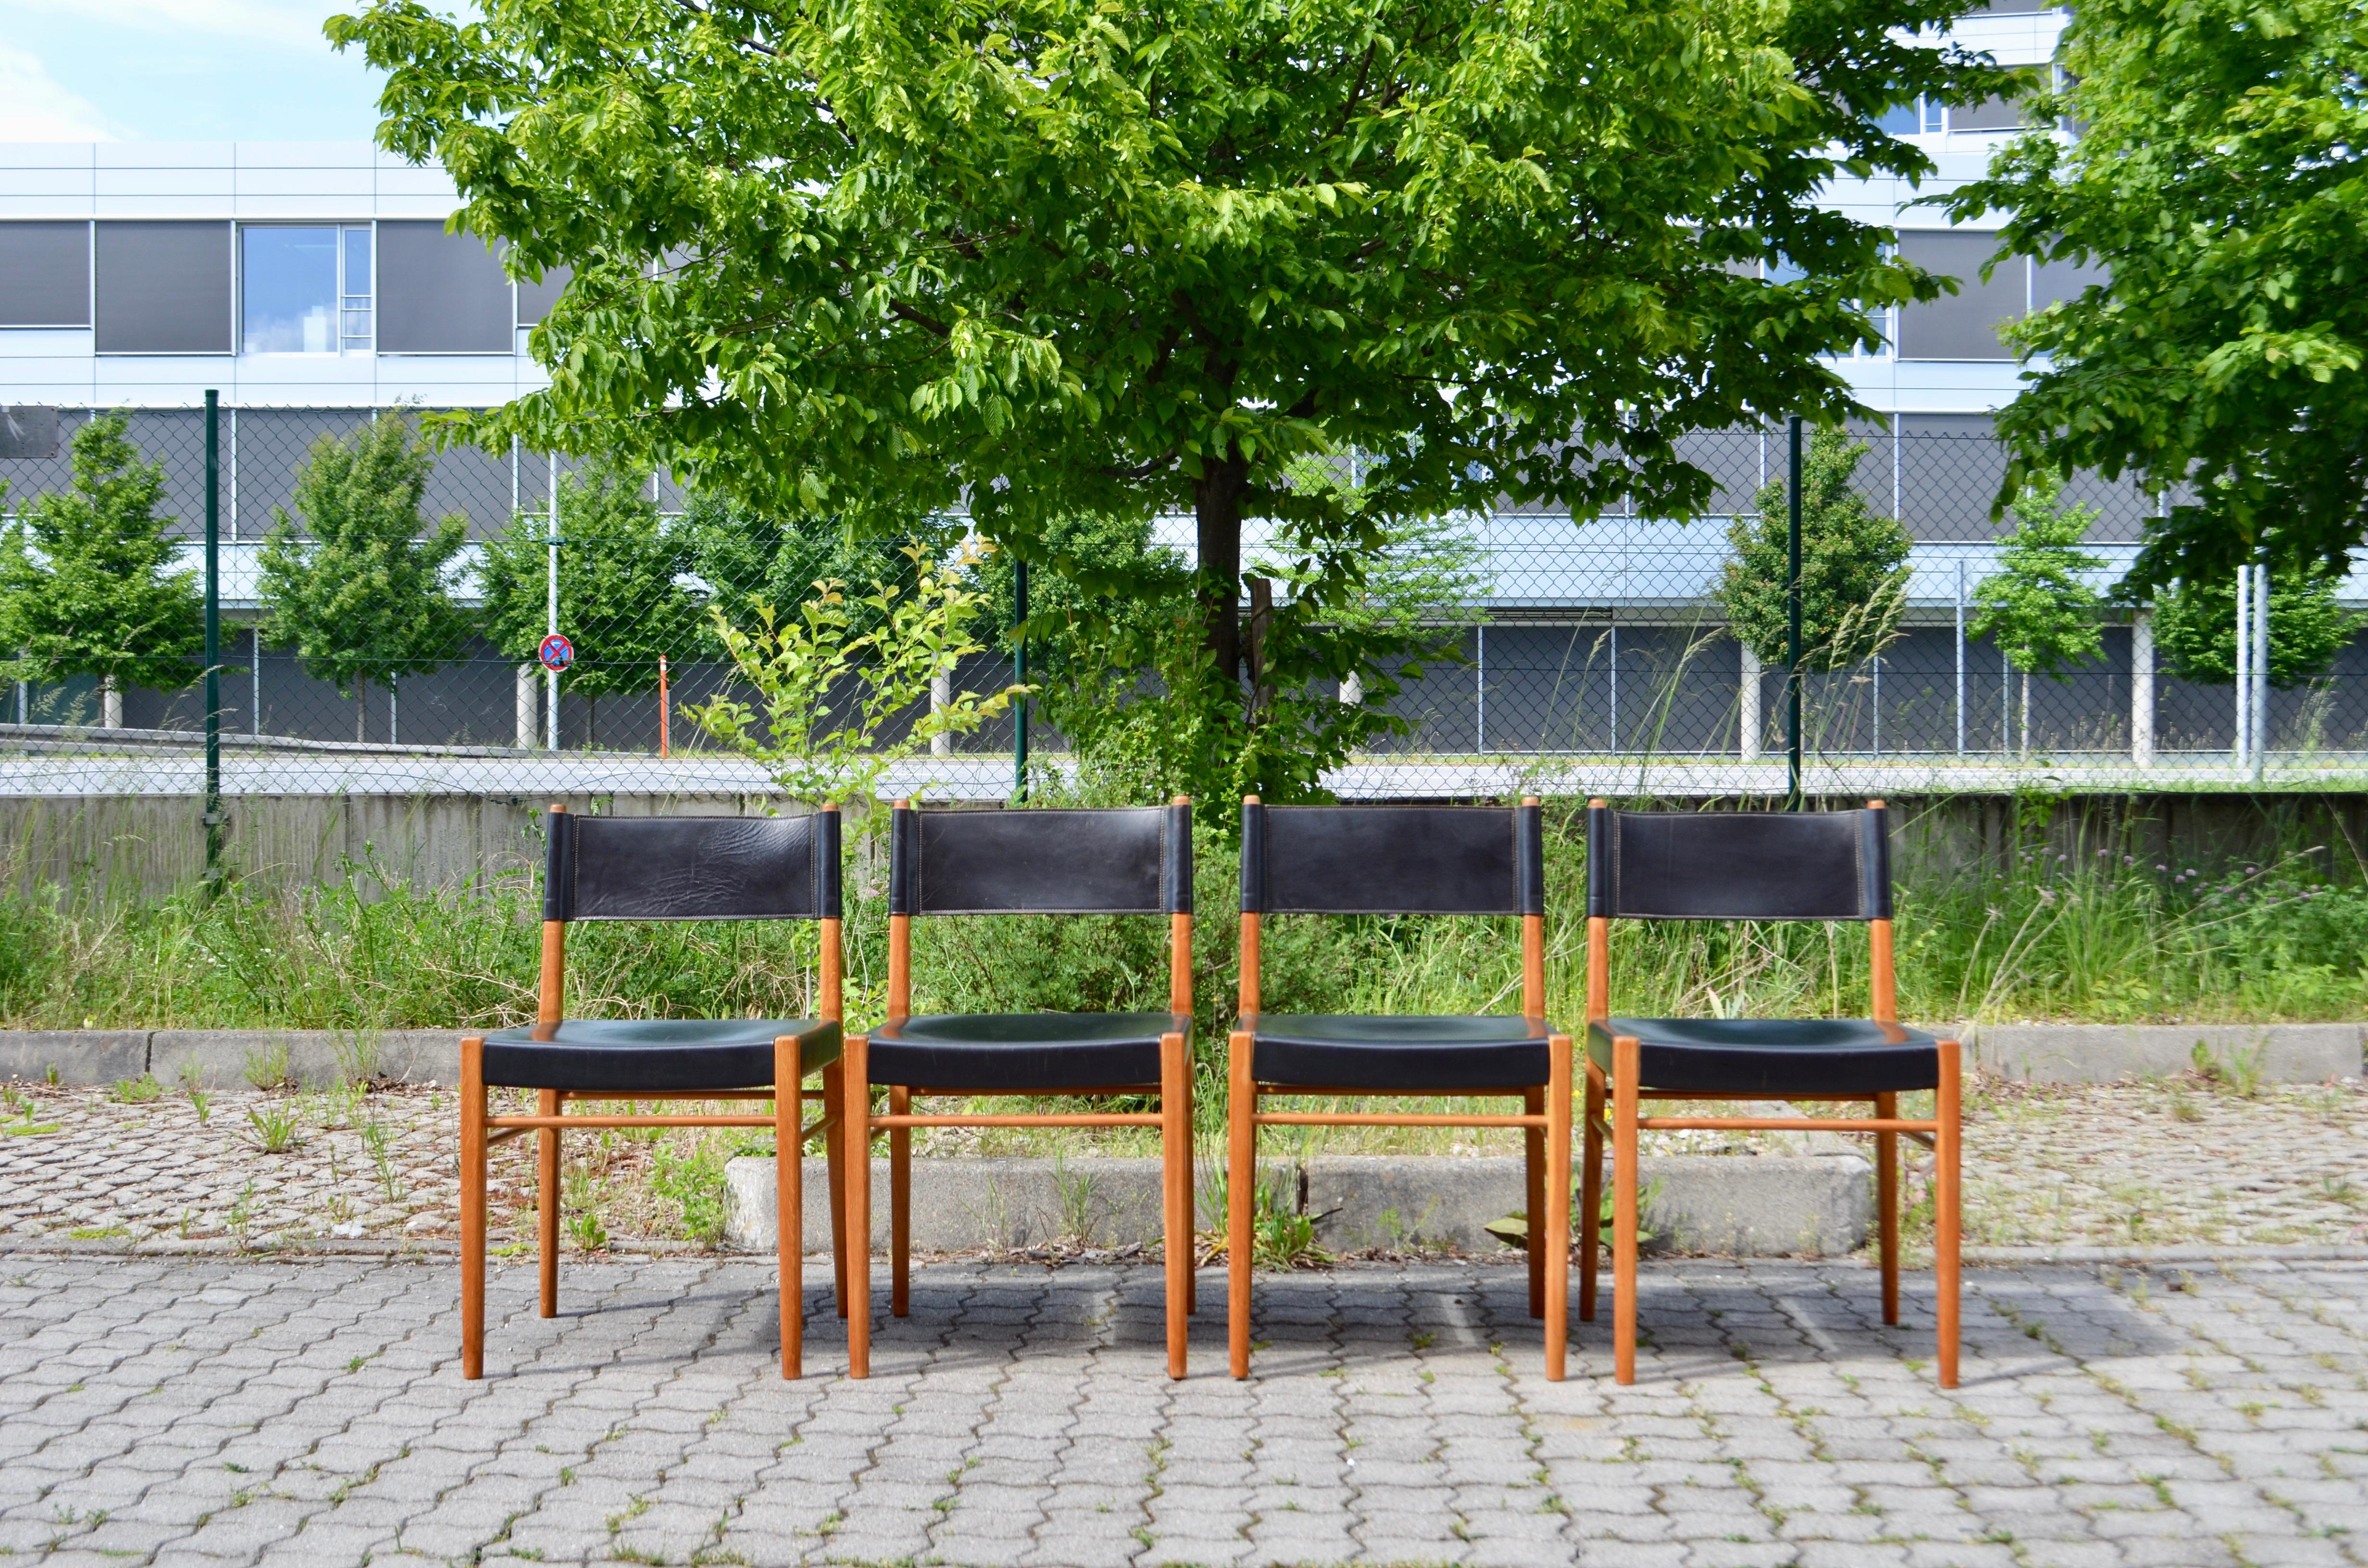 Dieser Stuhl wurde von Helmut Magg für die deutsche Manufaktur Deutsche Werkstätten entworfen.
Das Gestell ist aus geölter Eiche, die Sitzfläche ist aus schwarzem Sattelleder.
Das Modell ist 3024.
Die Stühle sind in gutem Originalzustand.
Satz